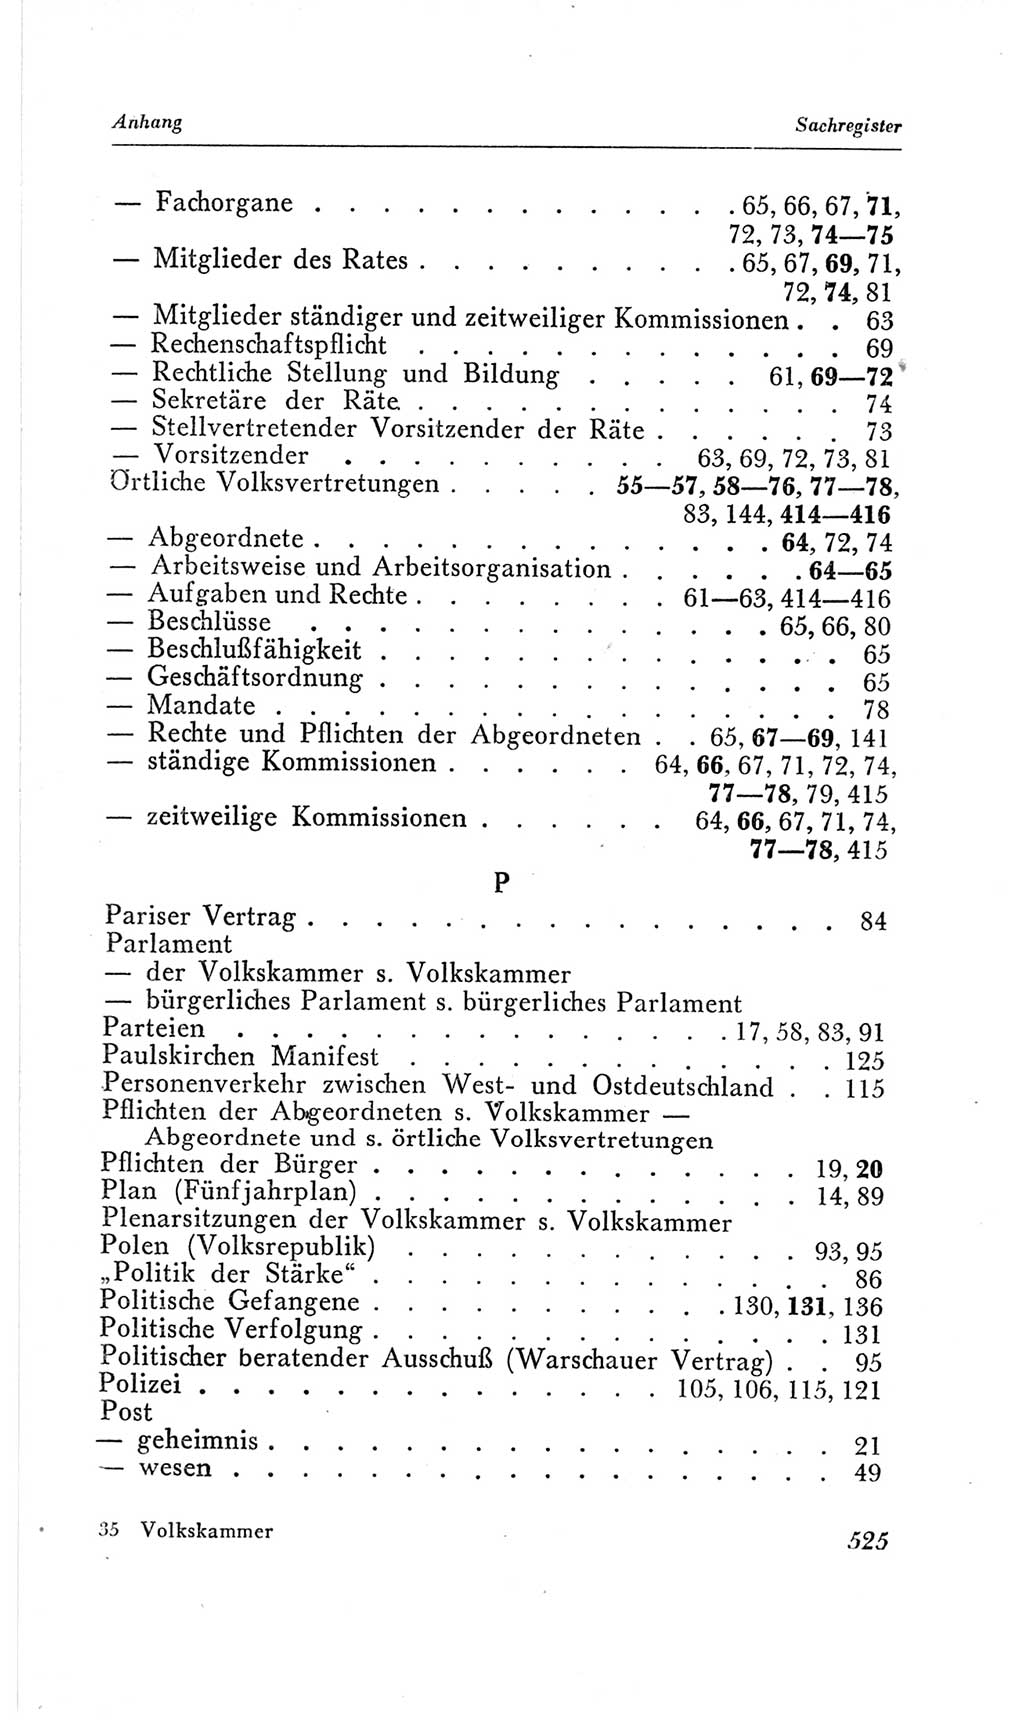 Handbuch der Volkskammer (VK) der Deutschen Demokratischen Republik (DDR), 2. Wahlperiode 1954-1958, Seite 525 (Hdb. VK. DDR, 2. WP. 1954-1958, S. 525)